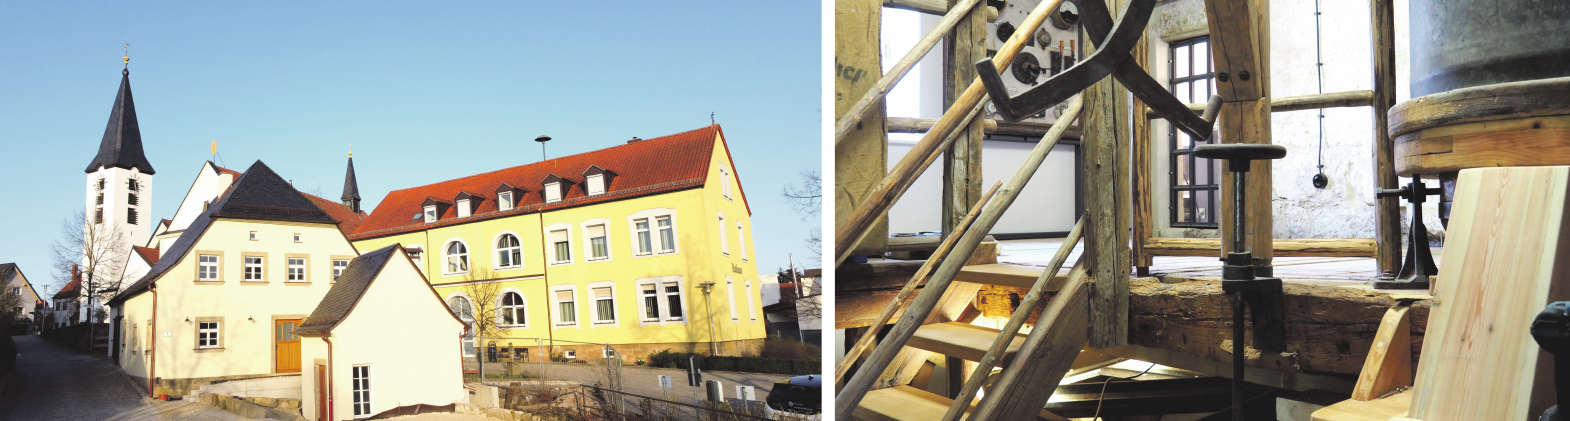 Umbau und Sanierung der Alten Mühle in Oberhaid mit Einbau eines Cafés mit Eisdiele-3